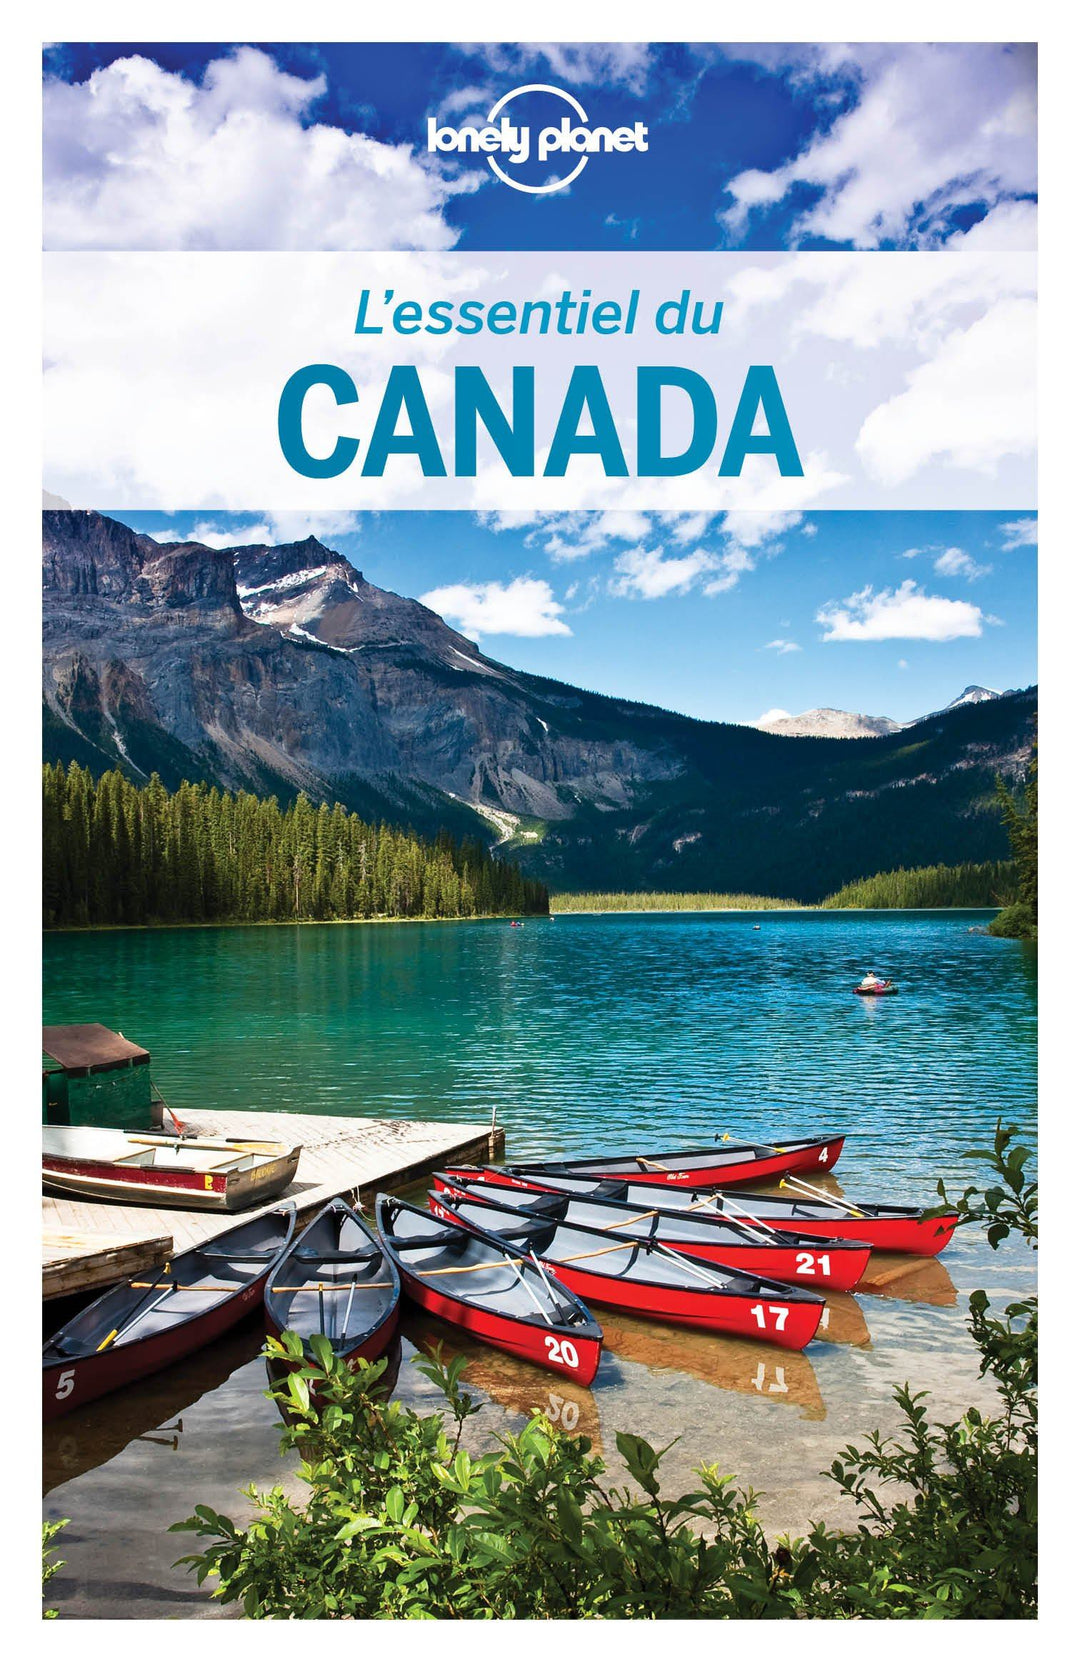 Guide de voyage - Canada essentiel - Édition 2020 | Lonely Planet guide de voyage Lonely Planet 